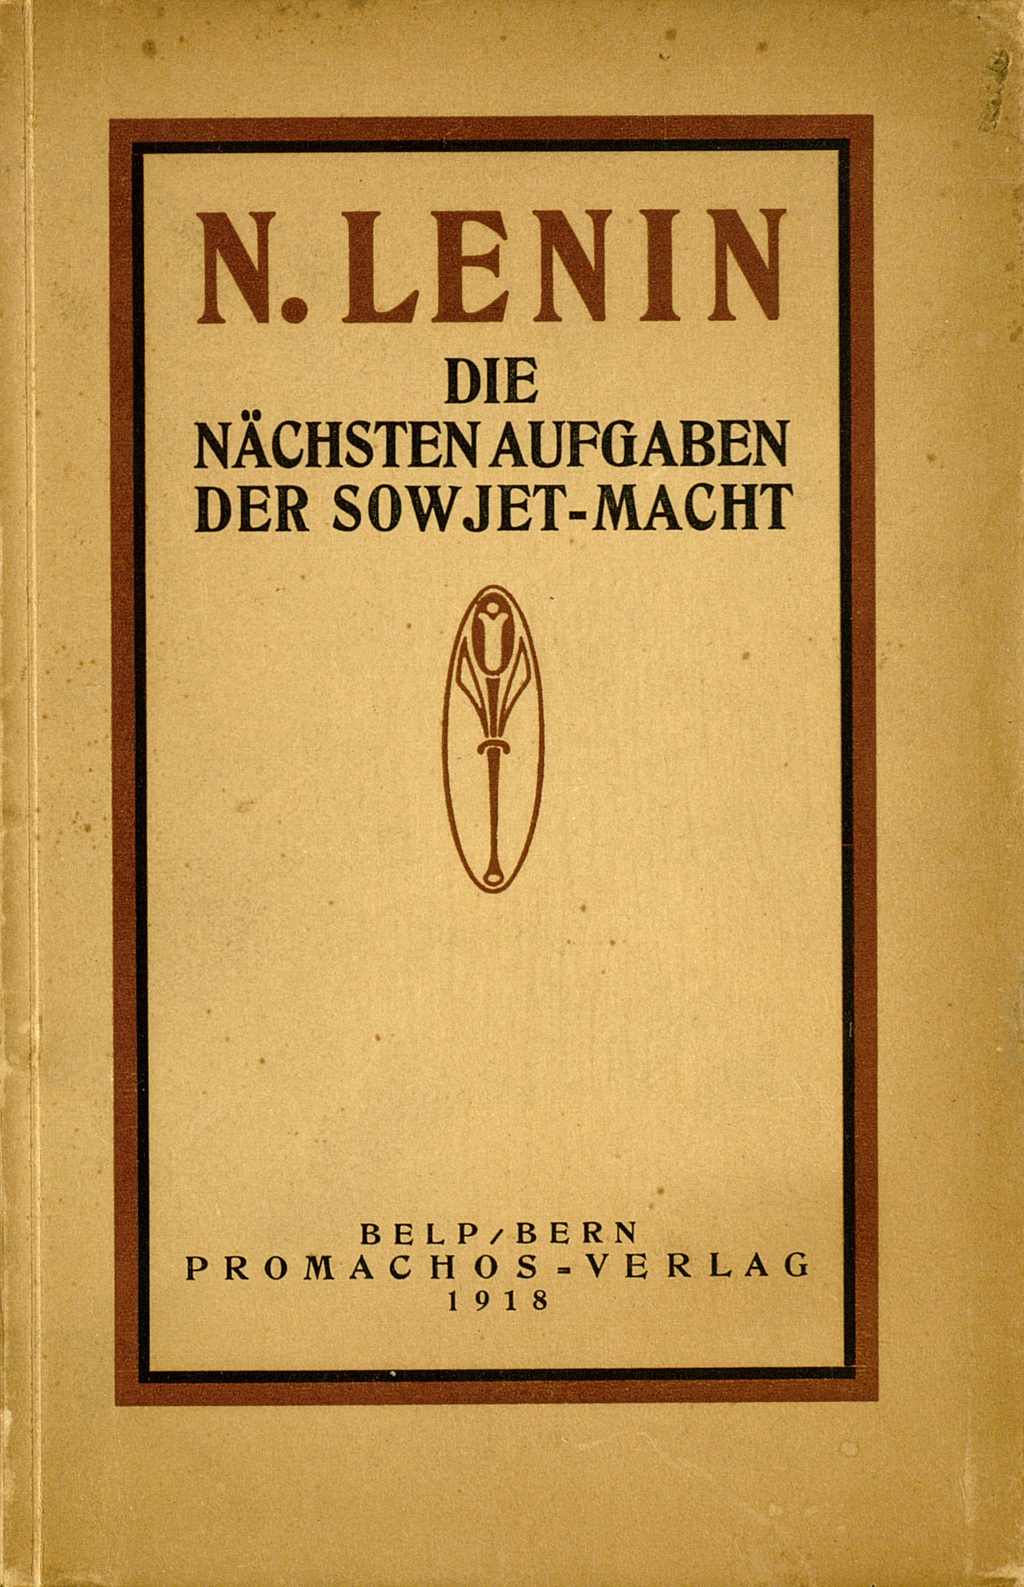 Zu sehen ist der Vorderdeckel der Broschüre Lenins. Der Titel des Buches ist in einen Rahmen gestellt, in der Mitte ist prominent das Verlagssignet des Promachos Verlages abgebildet.